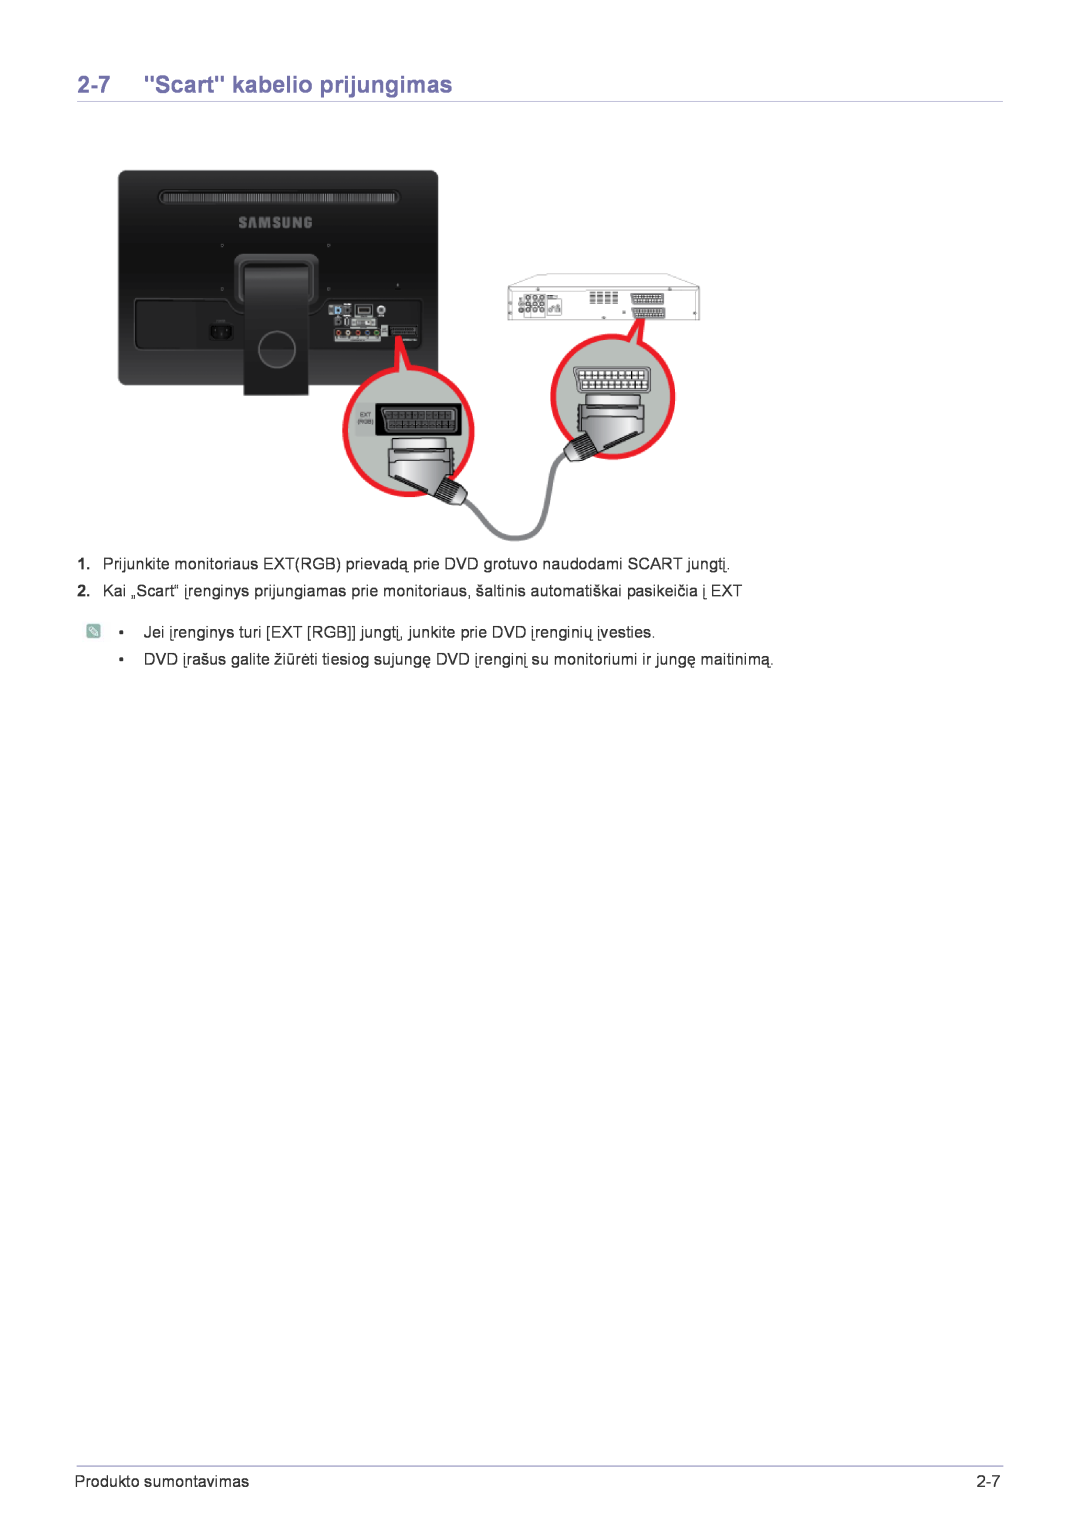 Samsung LS22FMDGF/EN manual Scart kabelio prijungimas, Produkto sumontavimas 